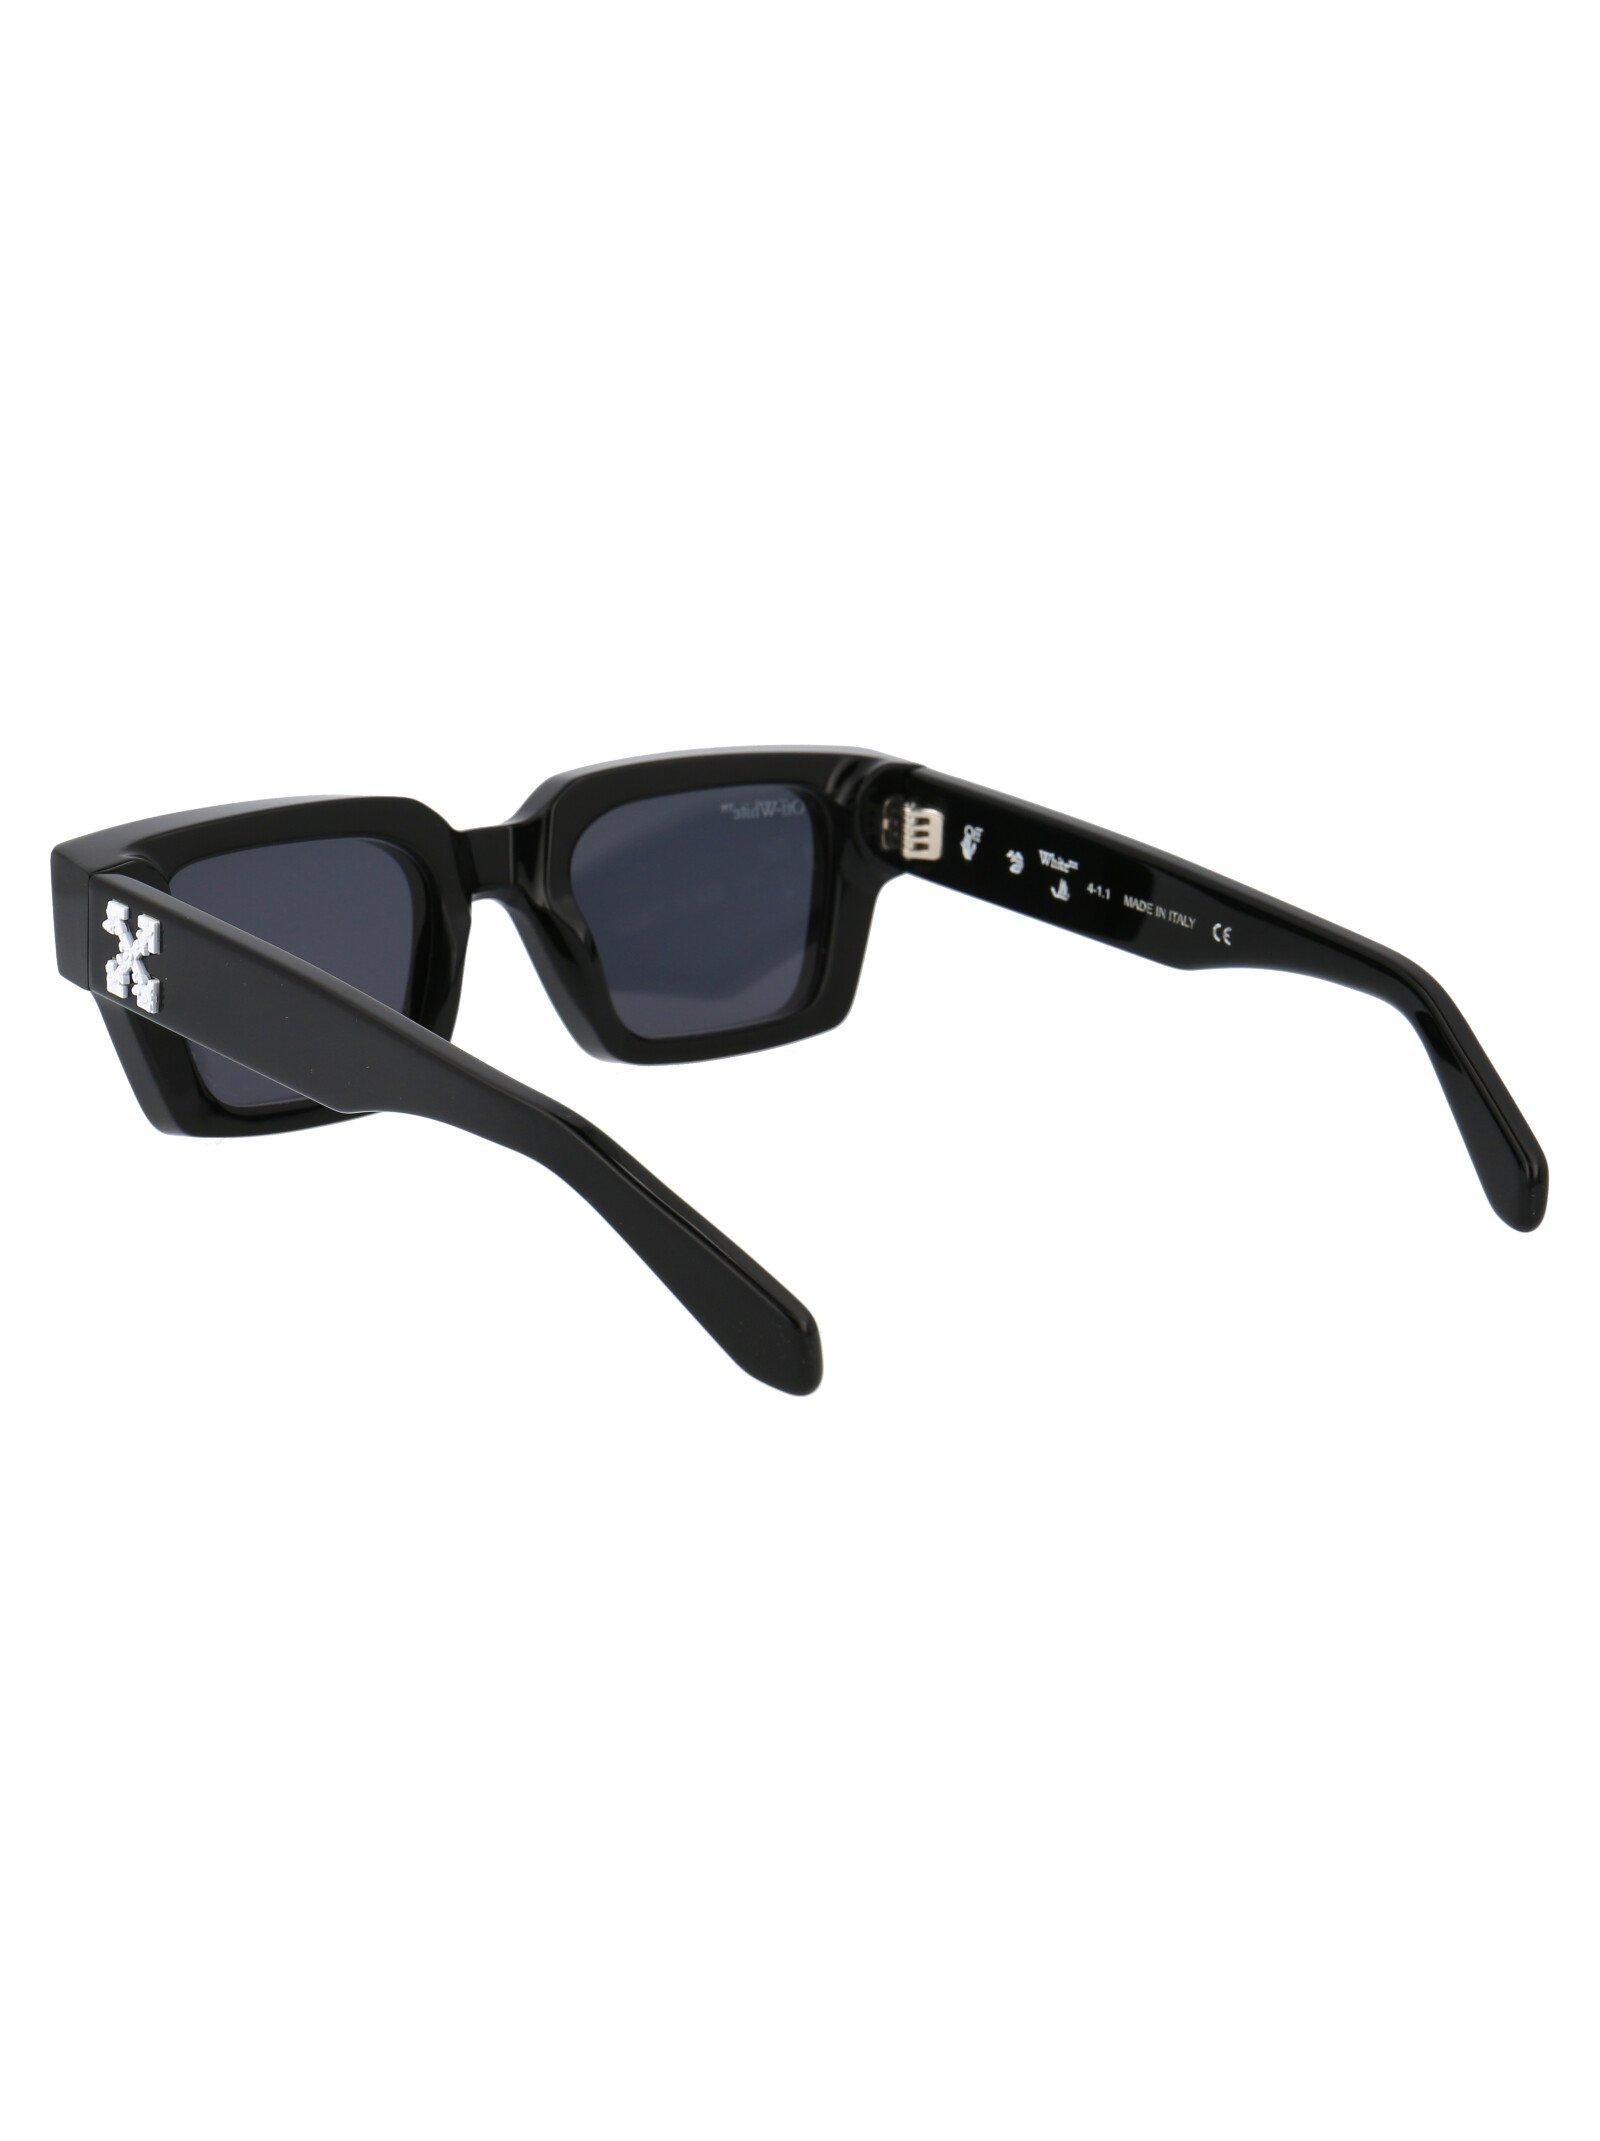 Off-White Virgil Oeri008 Rectangle Sunglasses